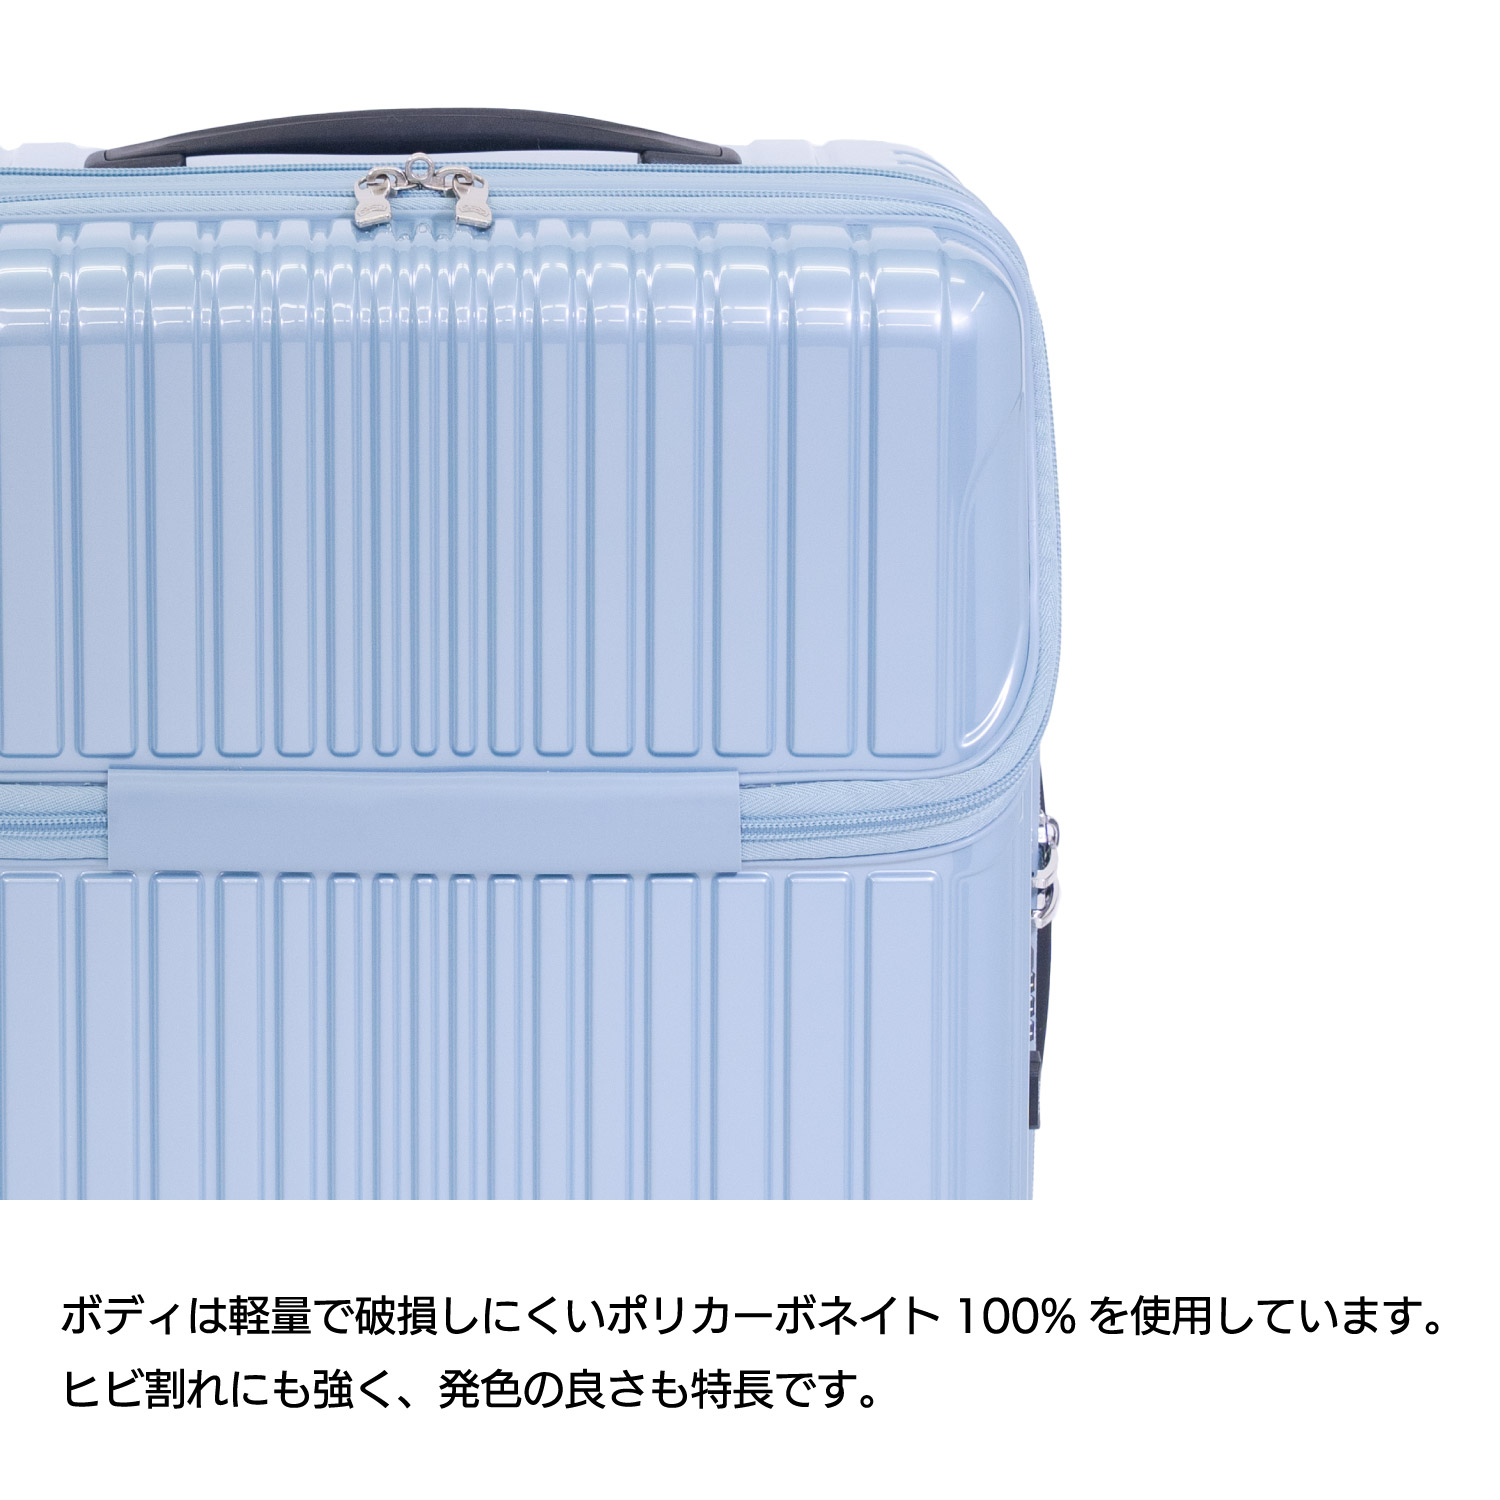 中古 格安買取 ハードキャリー 6000series アッシュブルー ALI6000TP18 スーツケース、キャリーバッグ 